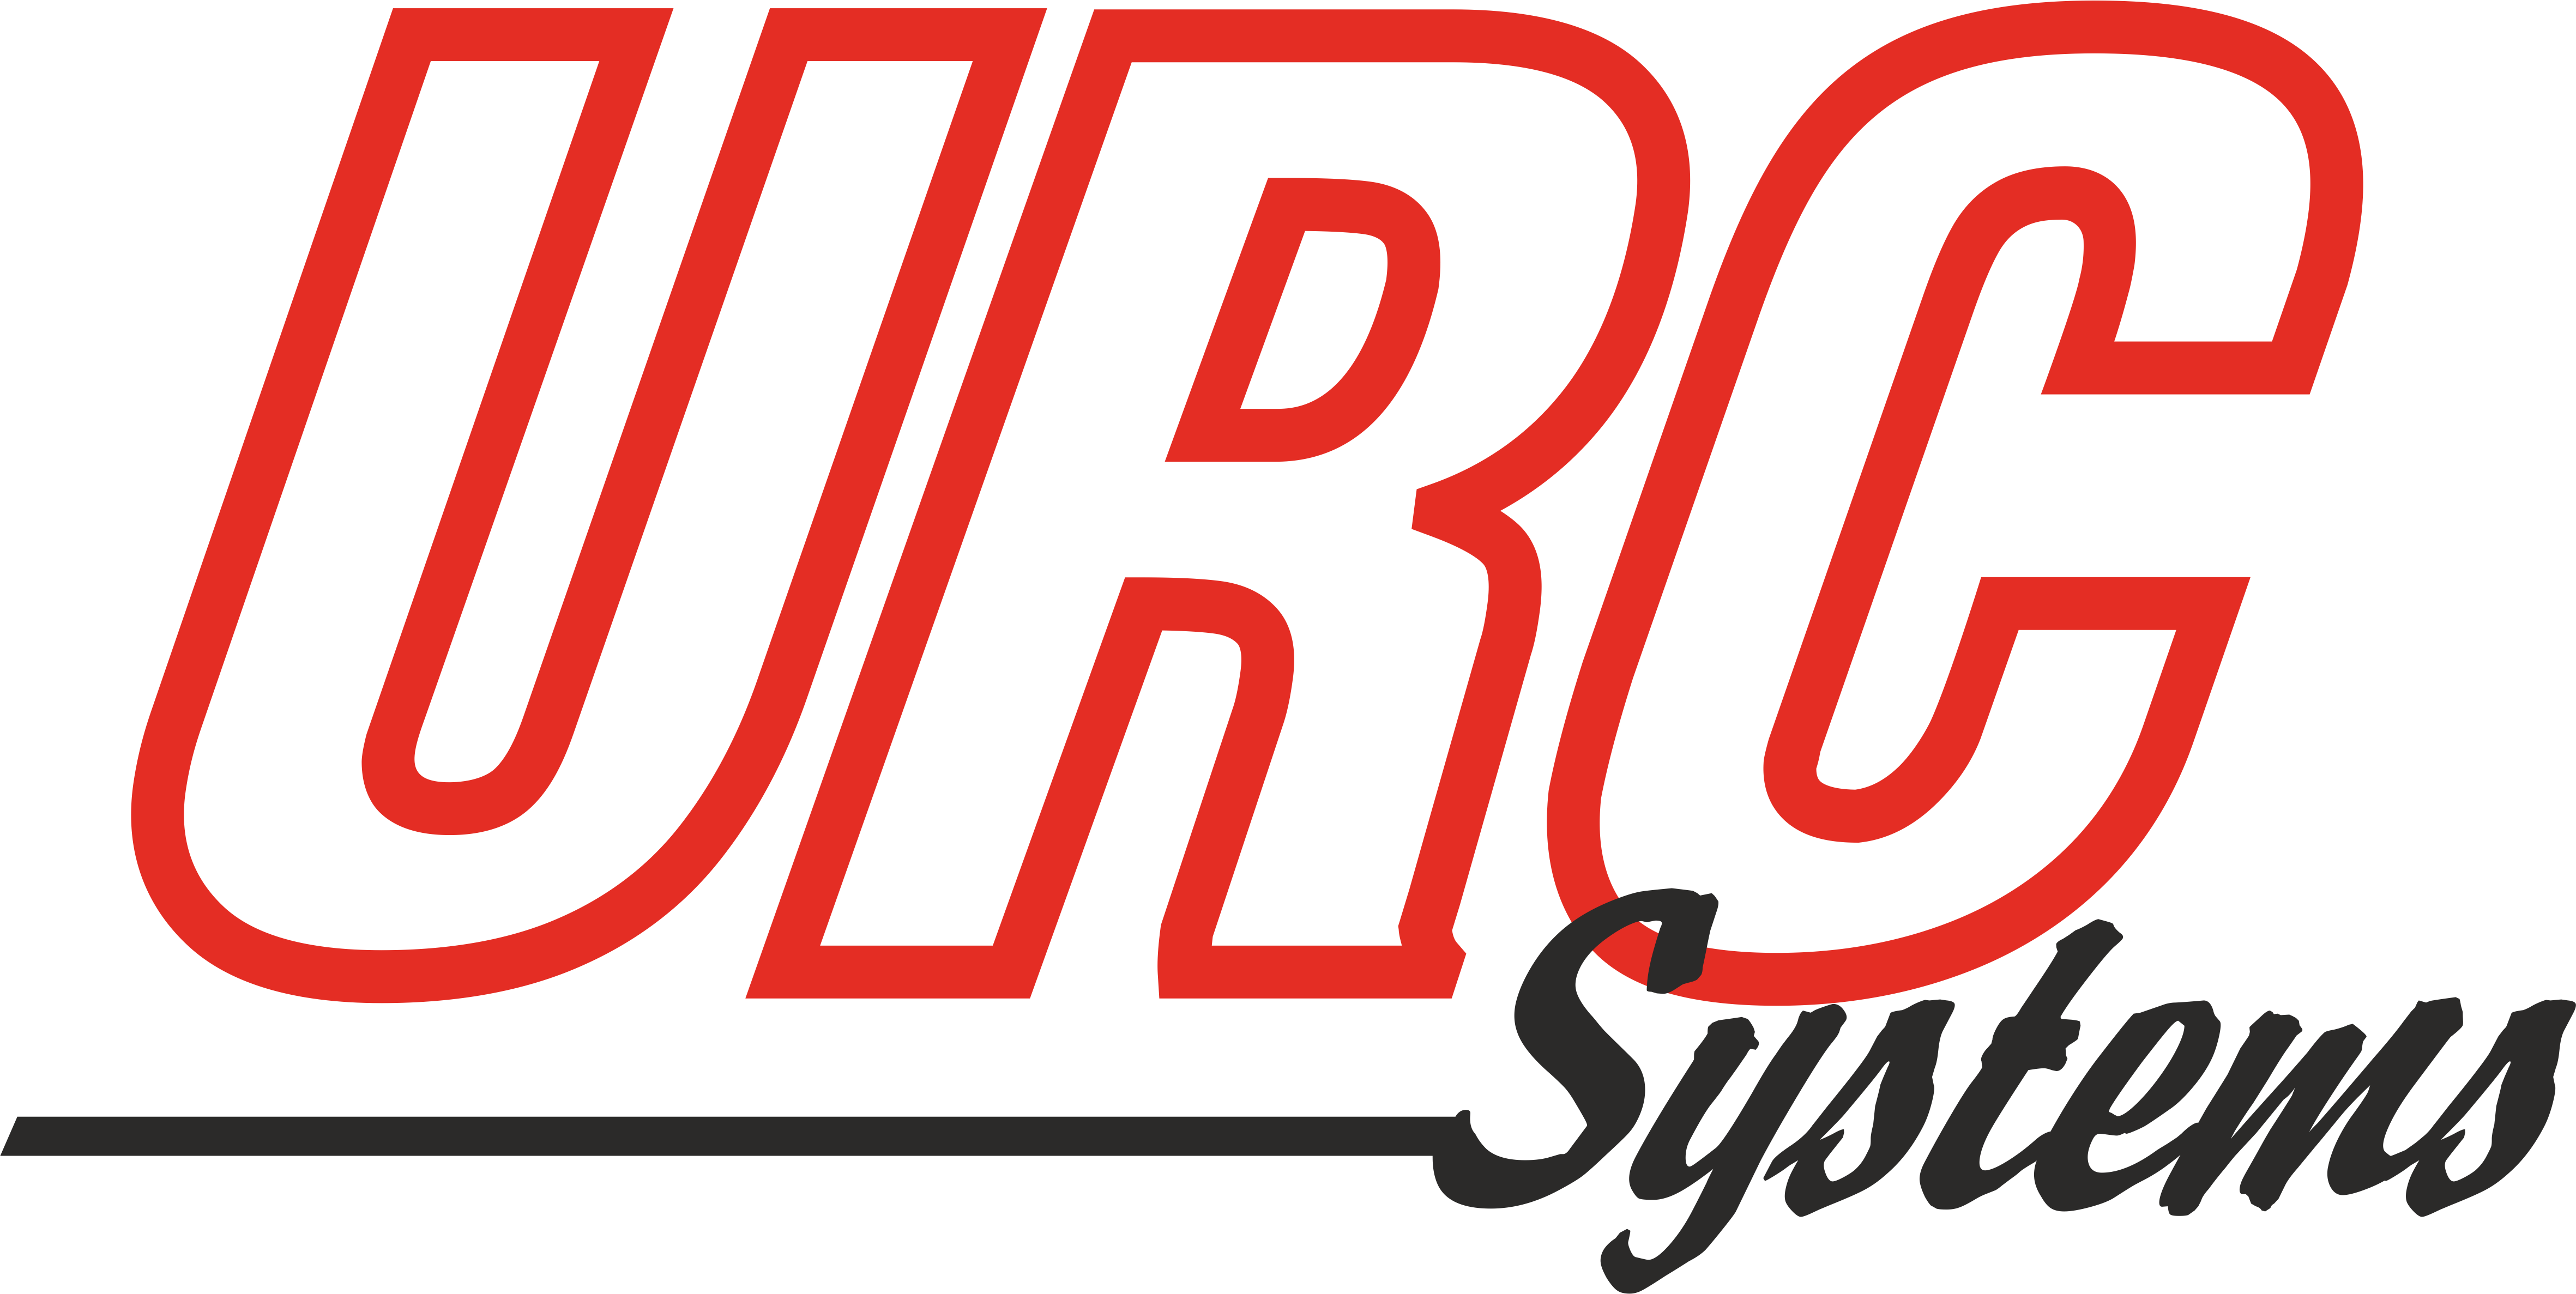 Soutěž Mikrokontroléry letí - sponzor - firma URC Systems